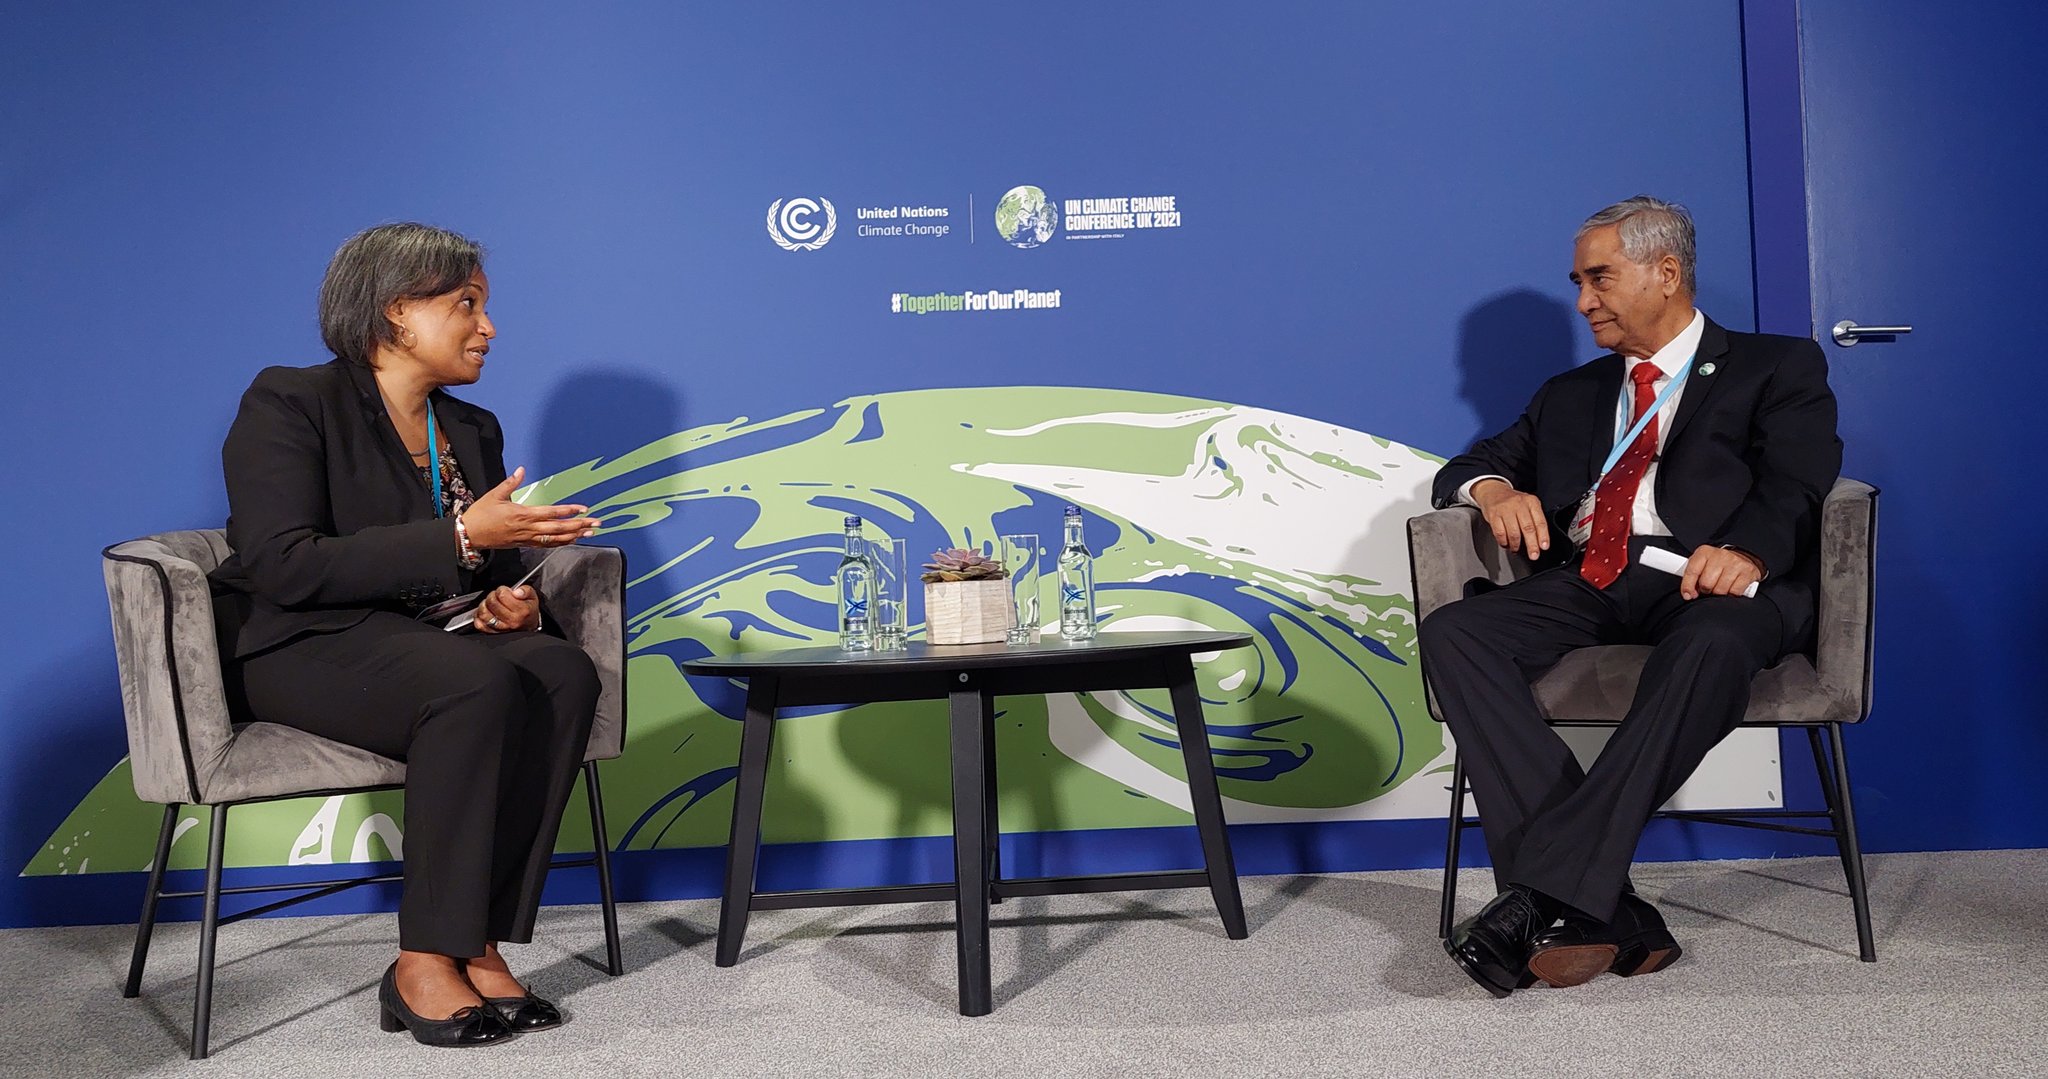 प्रधानमन्त्री देउवासँग एमसीसी सीइओको भेटवार्ता : सम्झौता अनुमोदनबारे पुनः अमेरिकी चासो